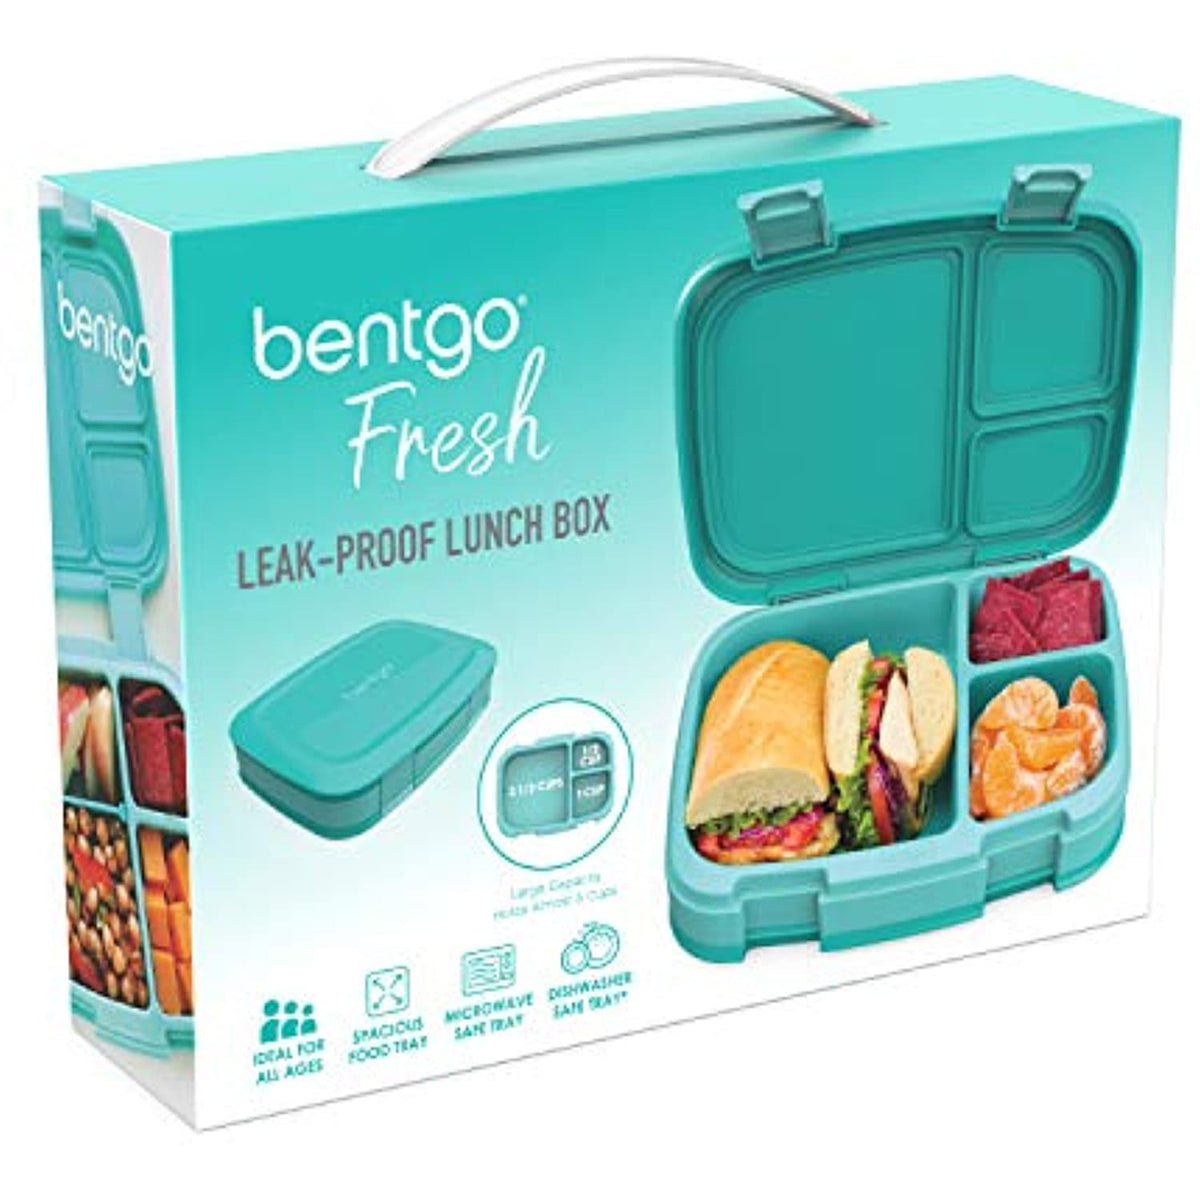 Bentgo Fresh – Leak-Proof, Versatile 4-Compartment Bento-Style